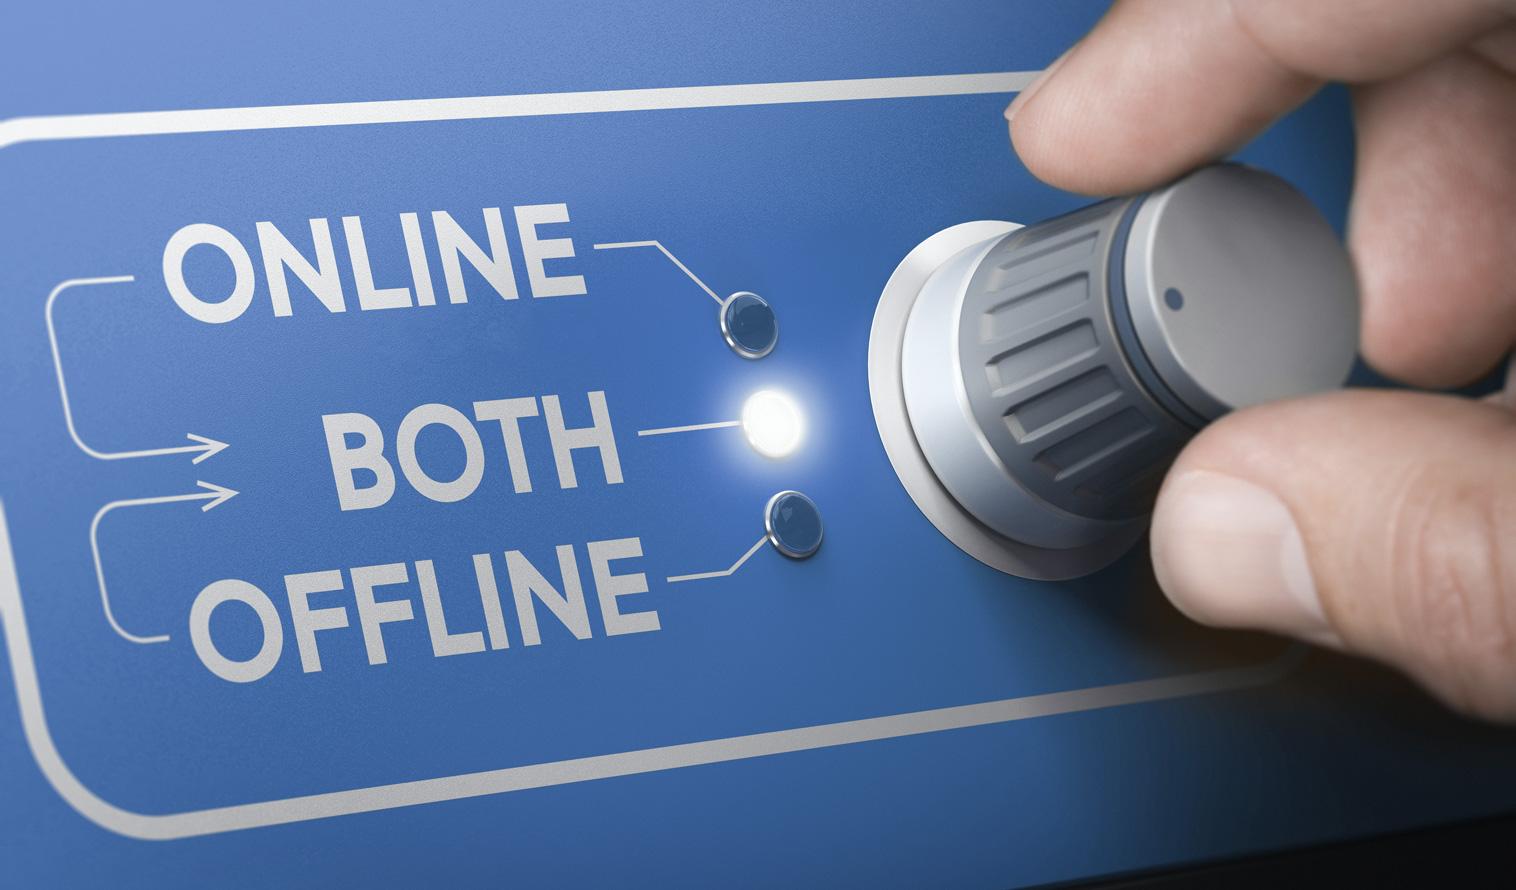 Umschaltknopf zwischen Online/Offline und beiden Optionen